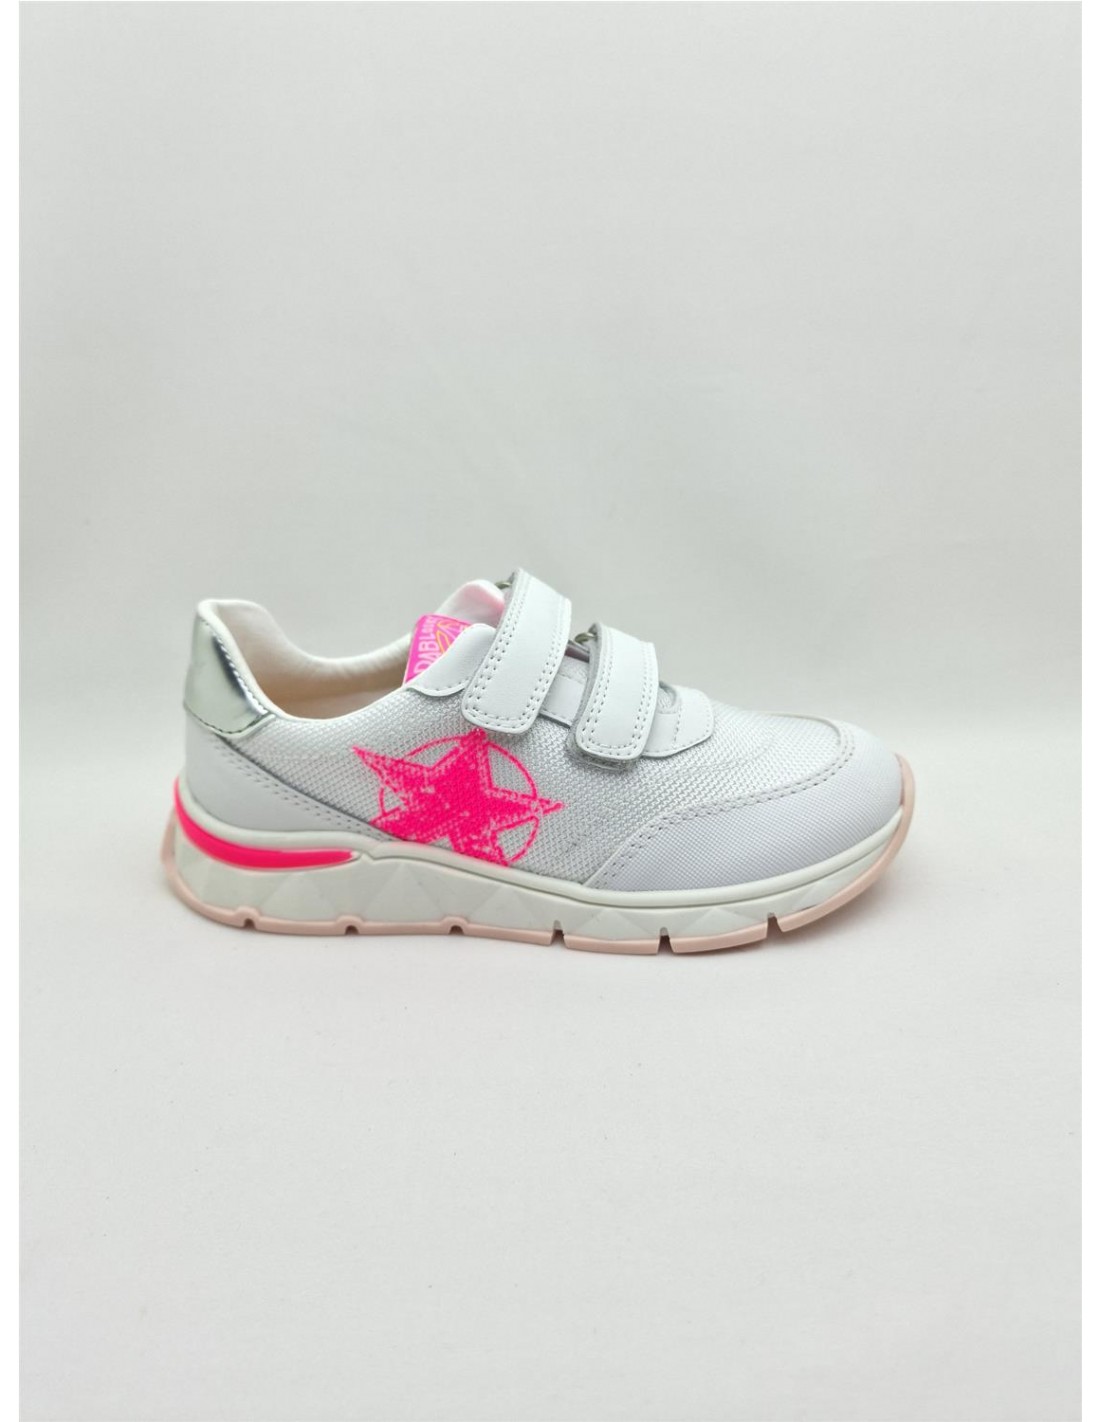 Кроссовки Pablosky для девочек, размер 31, белые с розовым принтом, 298707